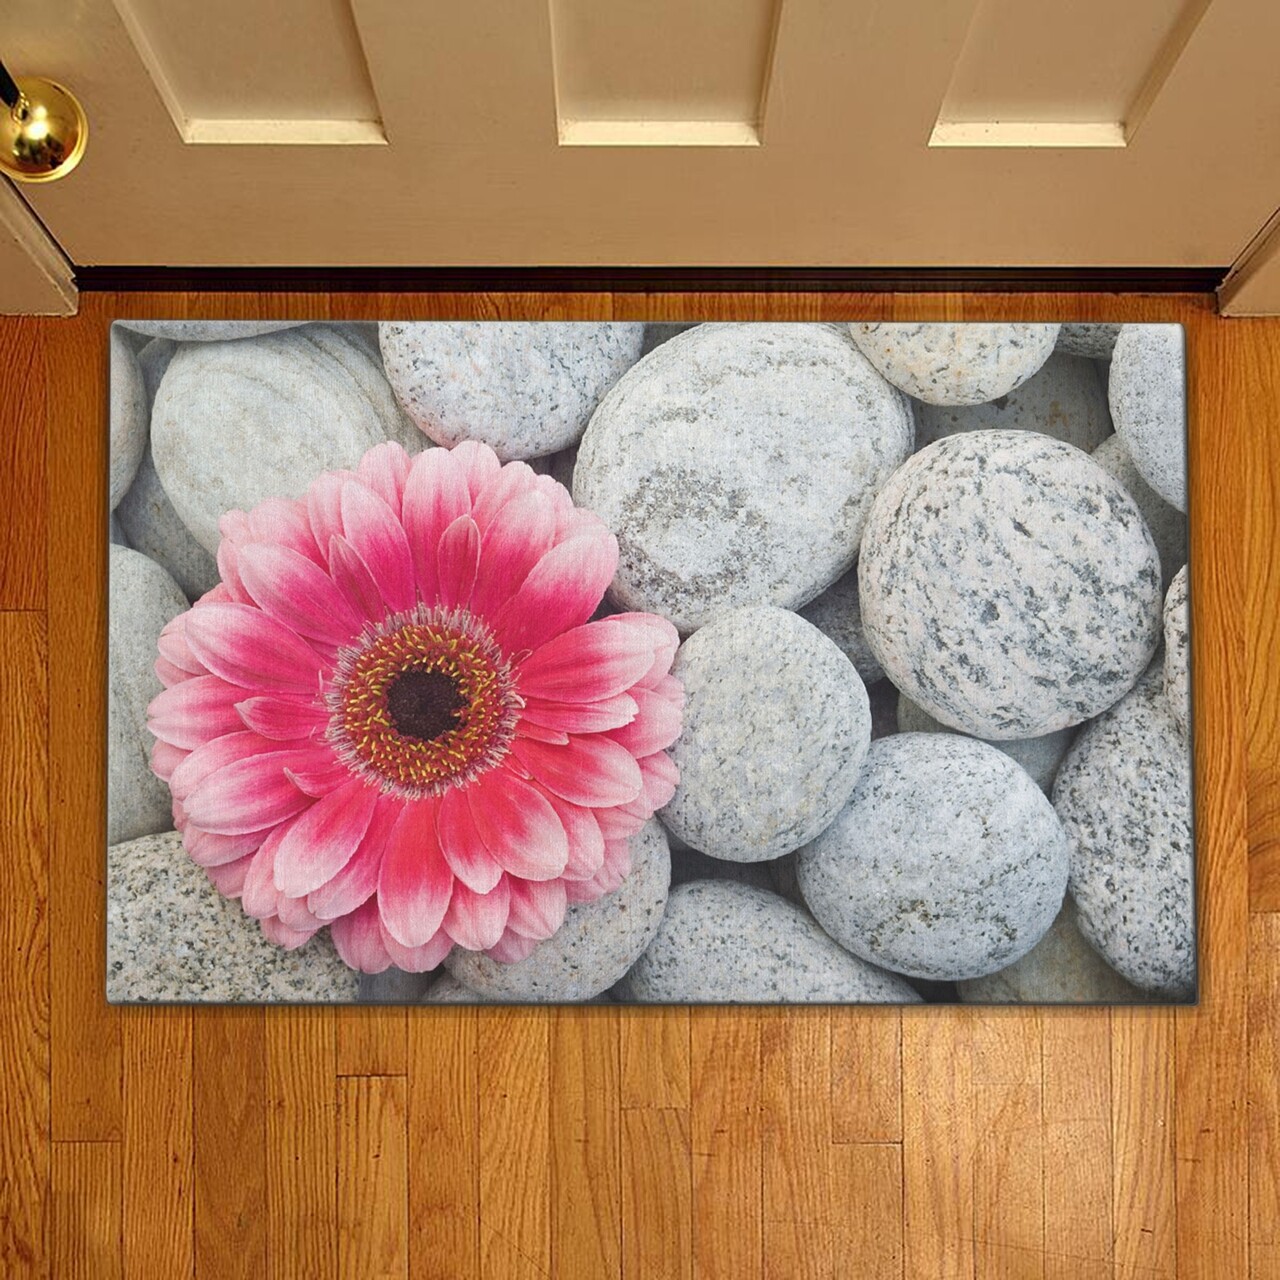 Bejárati szőnyeg Gerbera, Casberg, 38x58 cm, poliészter, rózsaszín/szürke